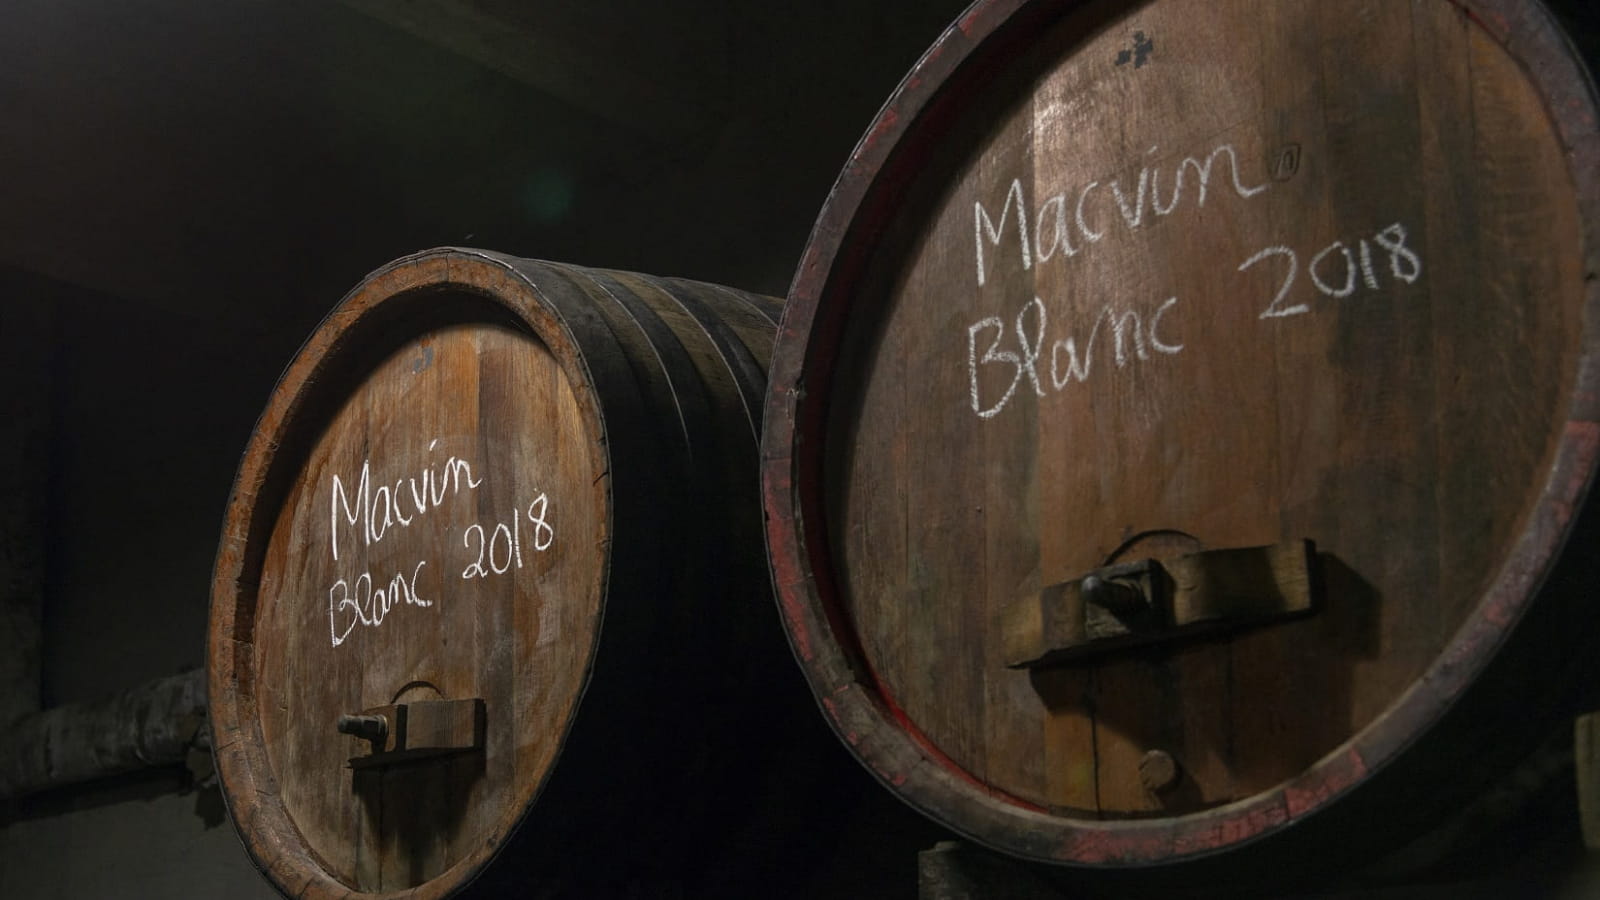 Tonneau de Macvin dans une Fruitière vinicole d'Arbois